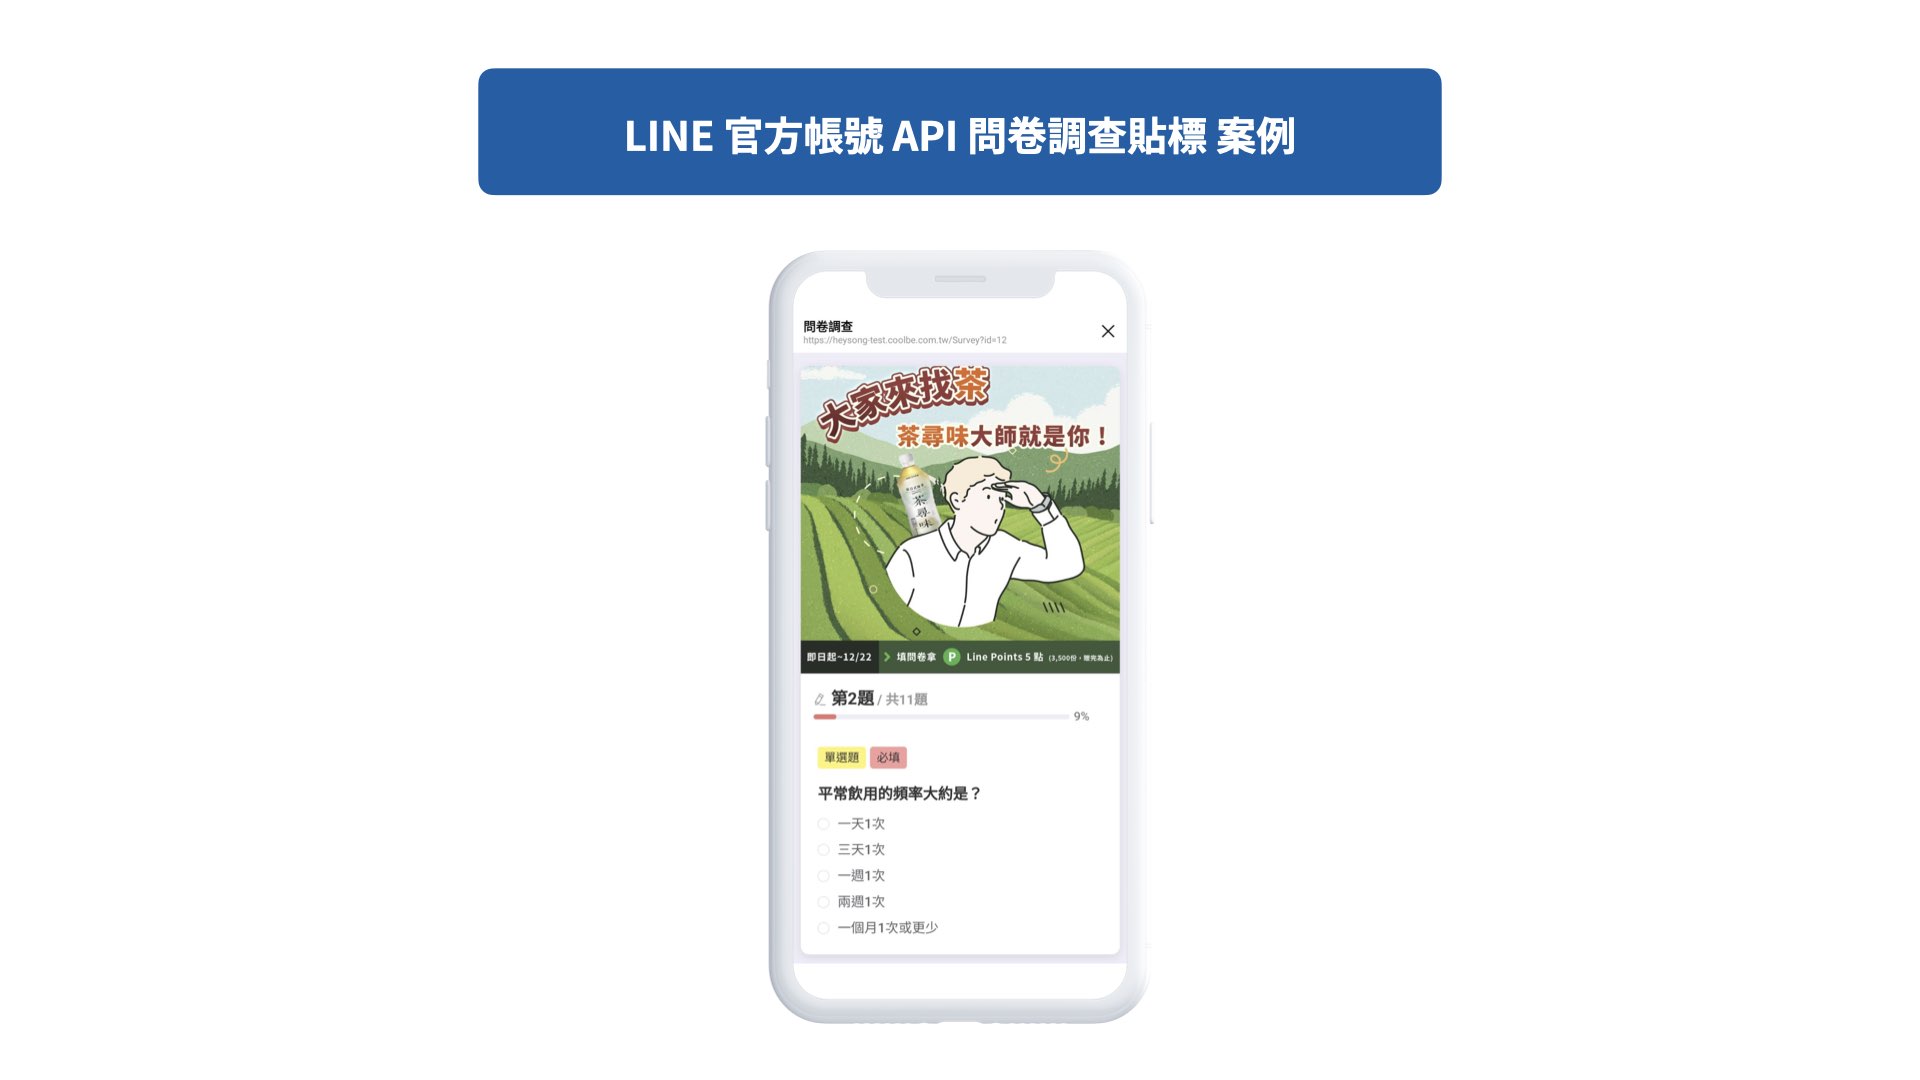 LINE官方帳號API 問卷調查貼標 案例